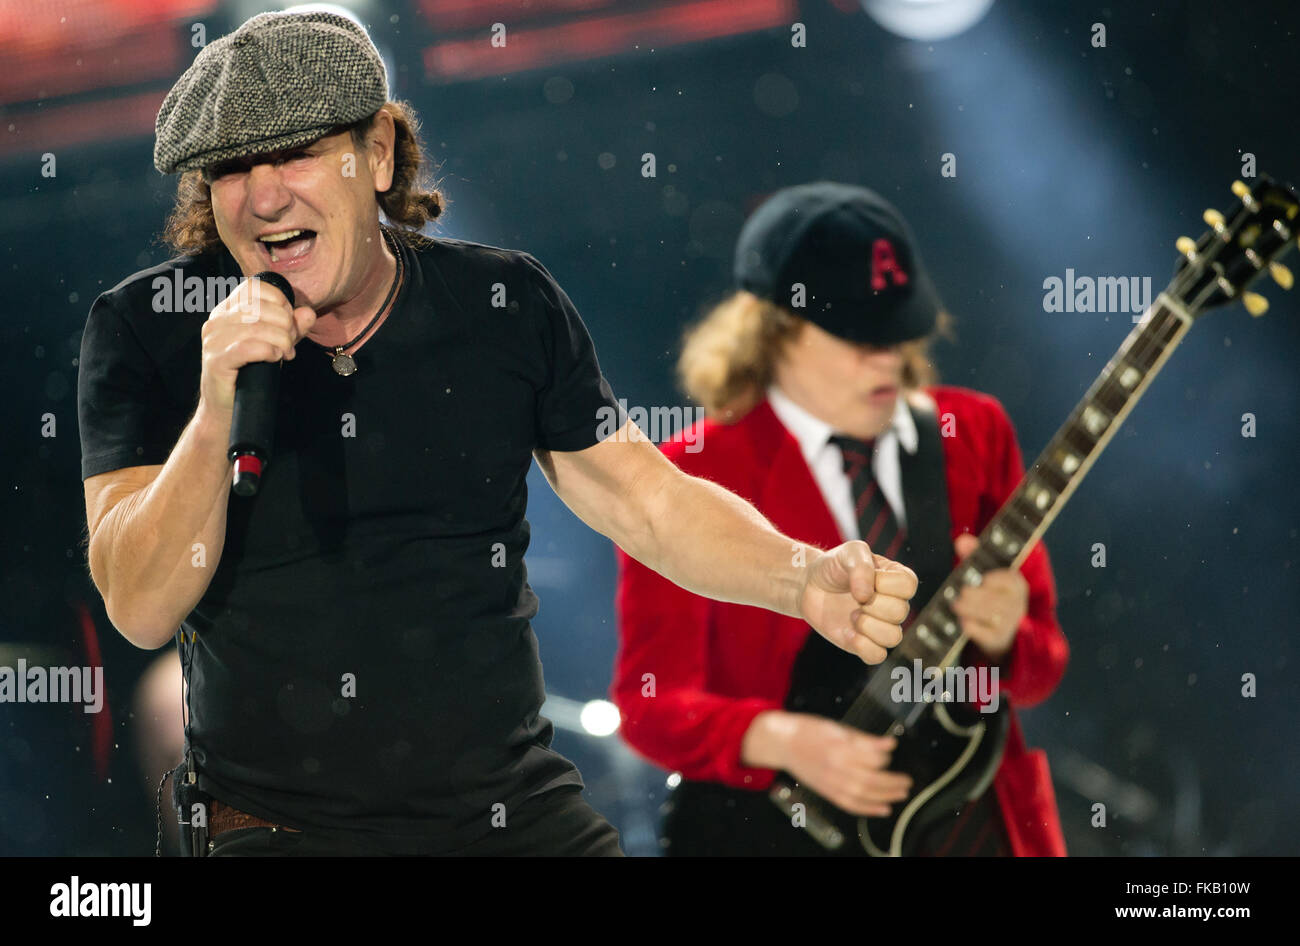 Der Sänger Brian Johnson (l) und der Gitarrist Angus Young der australischen Rockband AC/DC stehen am 19.05.2015 in München (Bayern) im Olympiastadion auf der Bühne. Foto: Sven Hoppe/dpa - NO WIRE SERVICE - Stock Photo